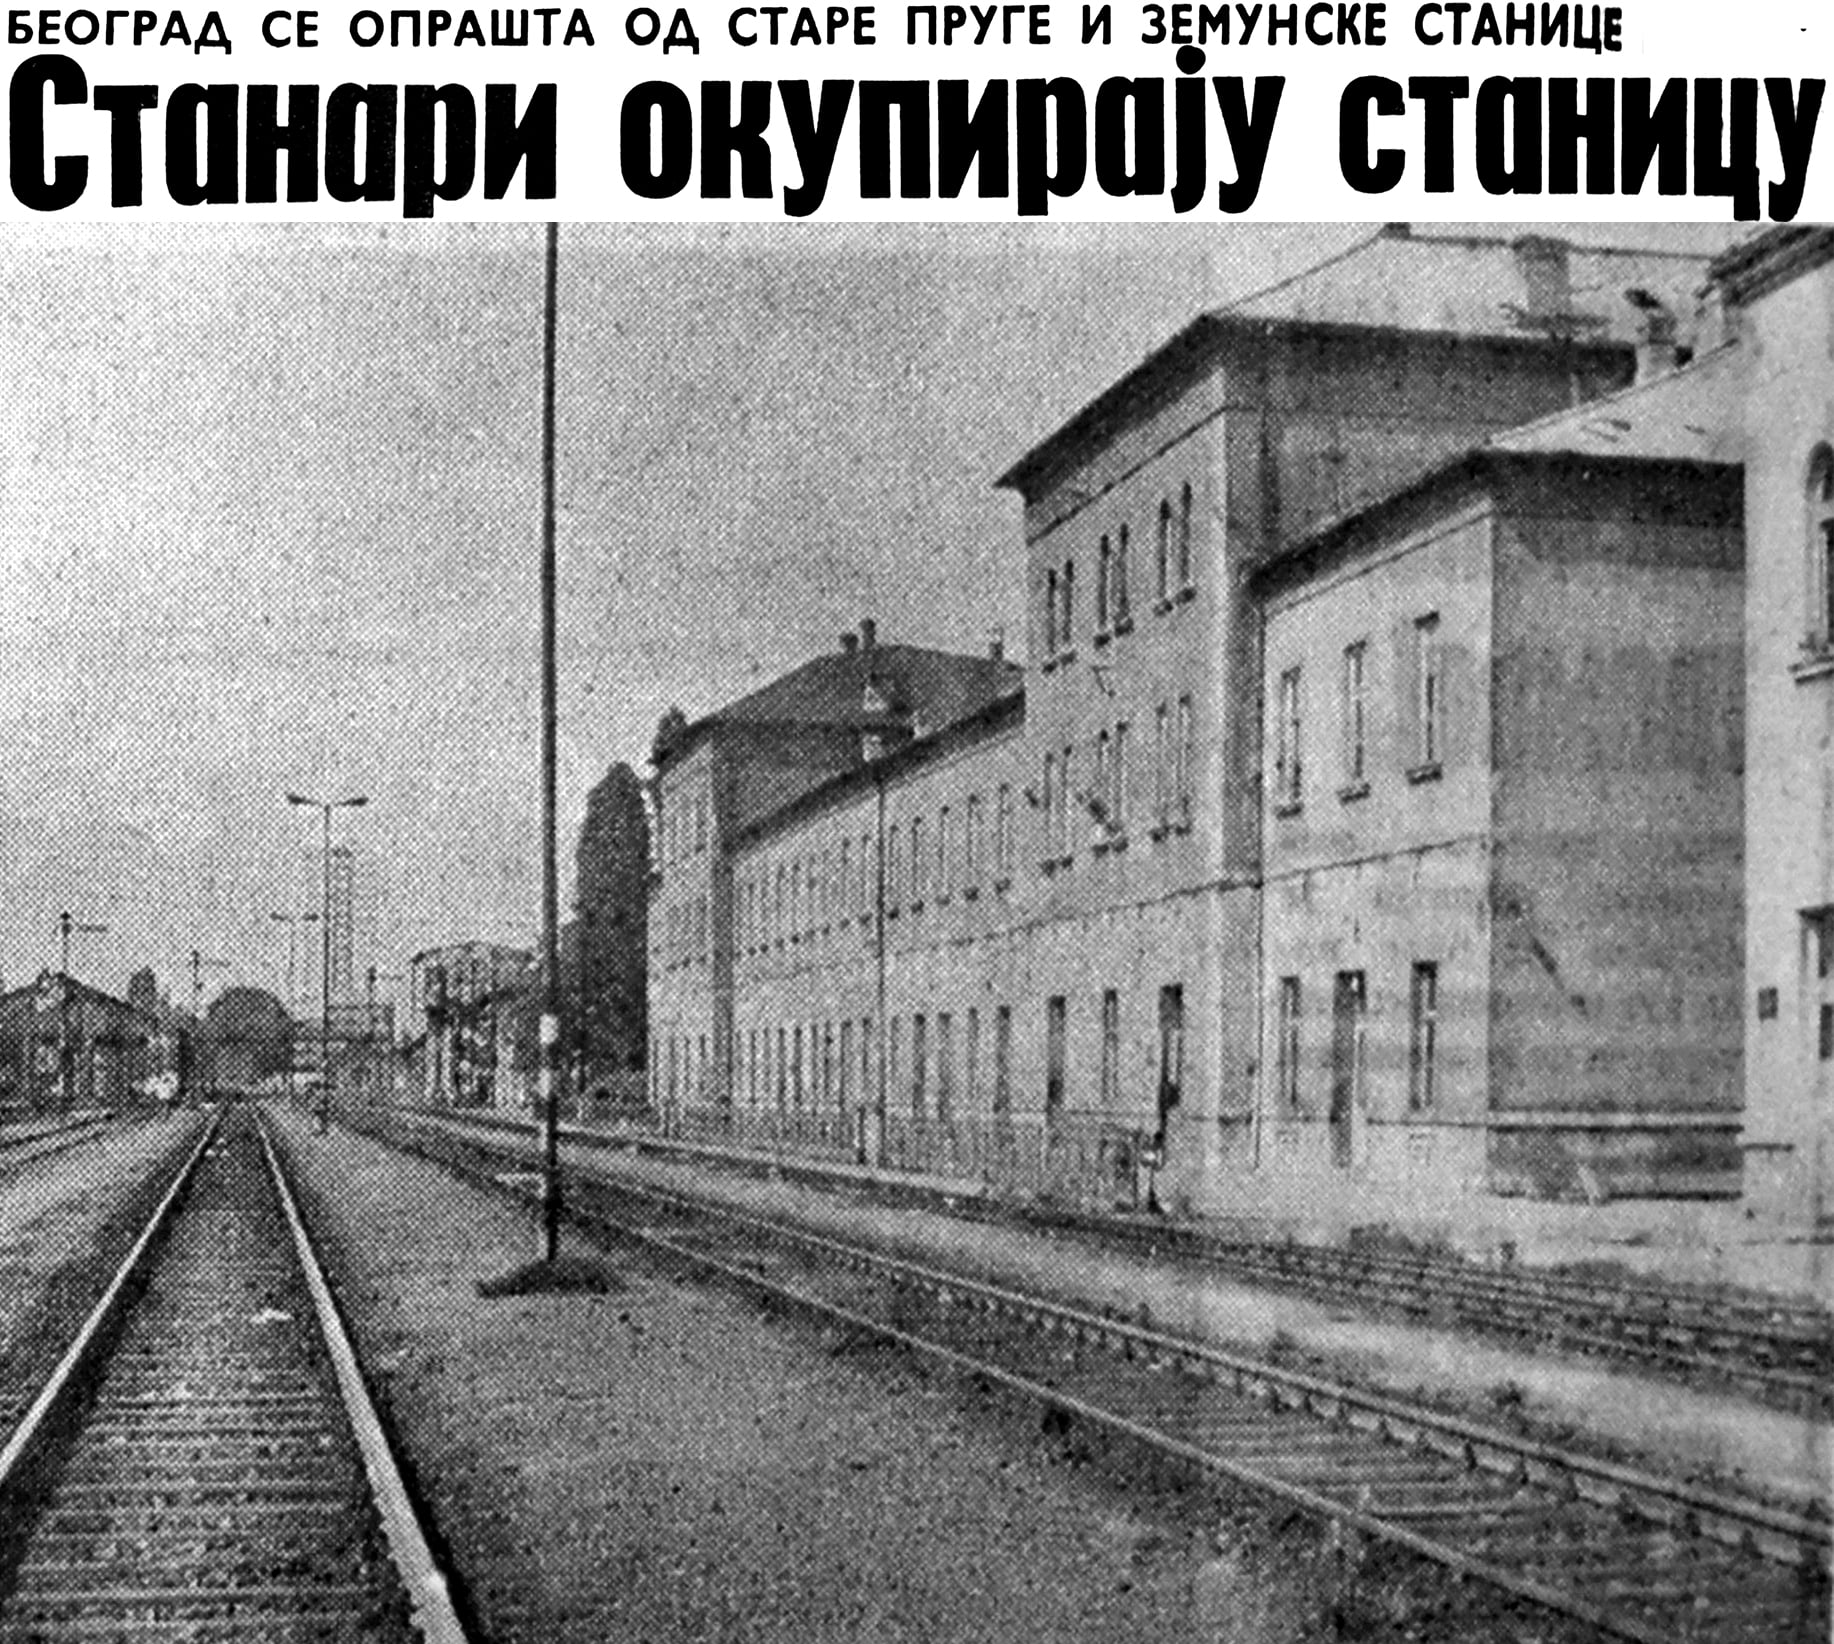 Zgrada i koloseci stare železničke stanice, pogled ka Karađorđevom trgu. Godina 1970..jpg